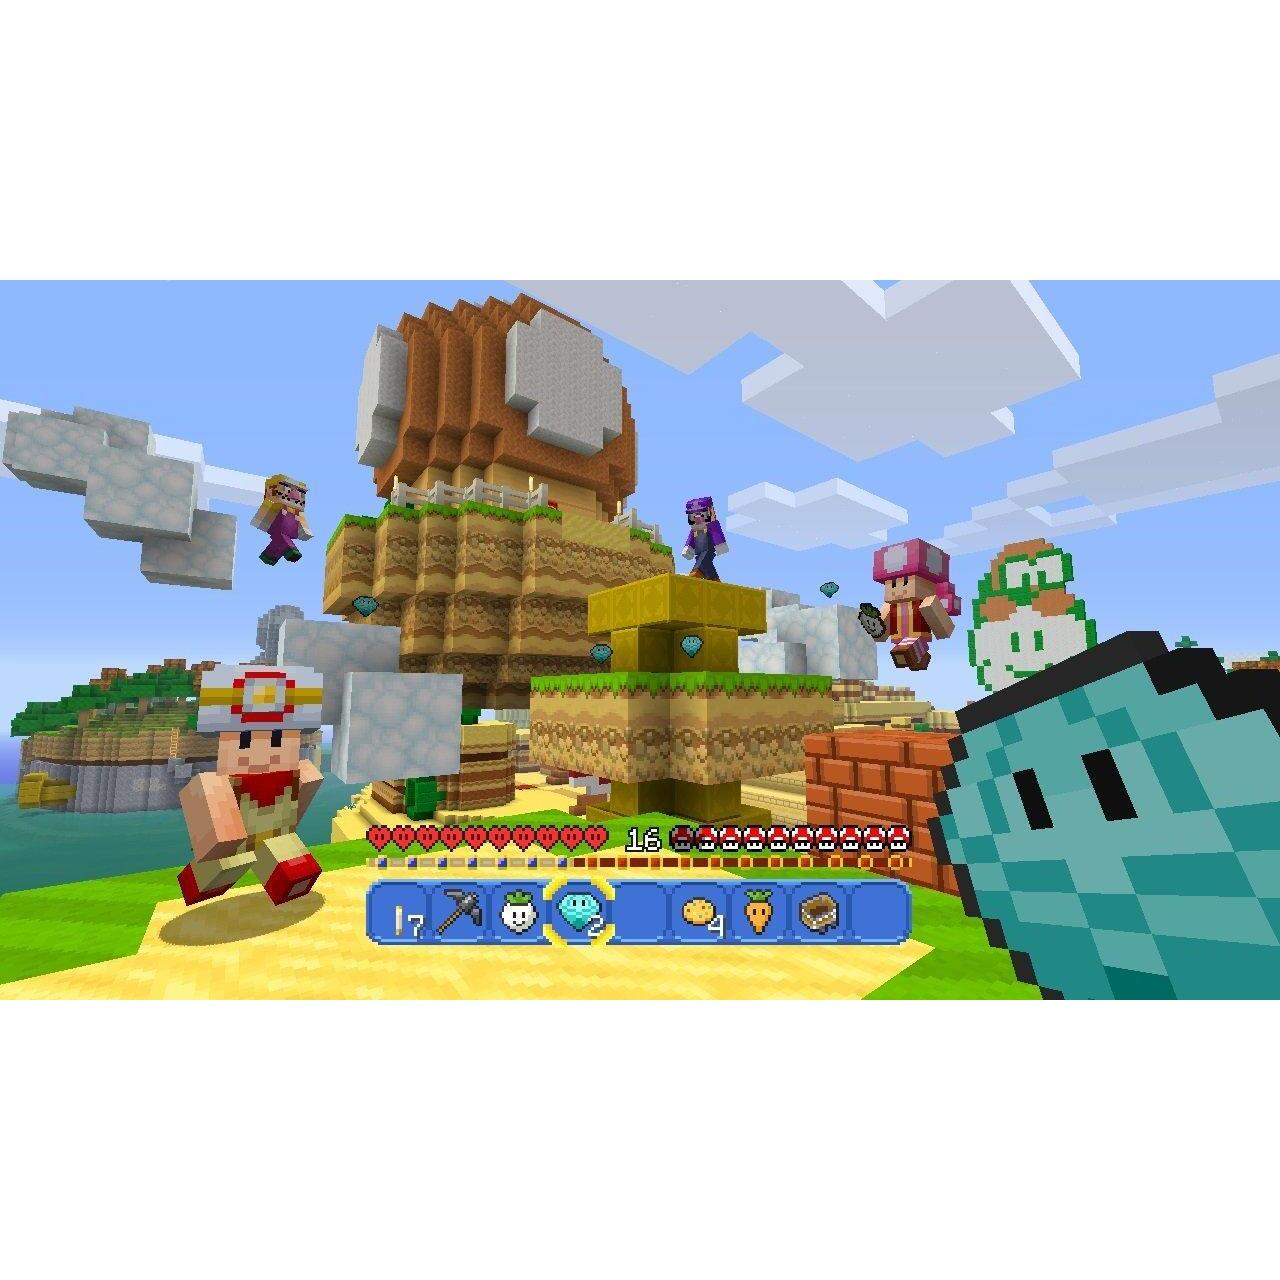 pen Vochtig Pigment Minecraft: Wii U Editie - Wii U kopen, morgen in huis. Alle Wii U spellen  vanaf € 2,00